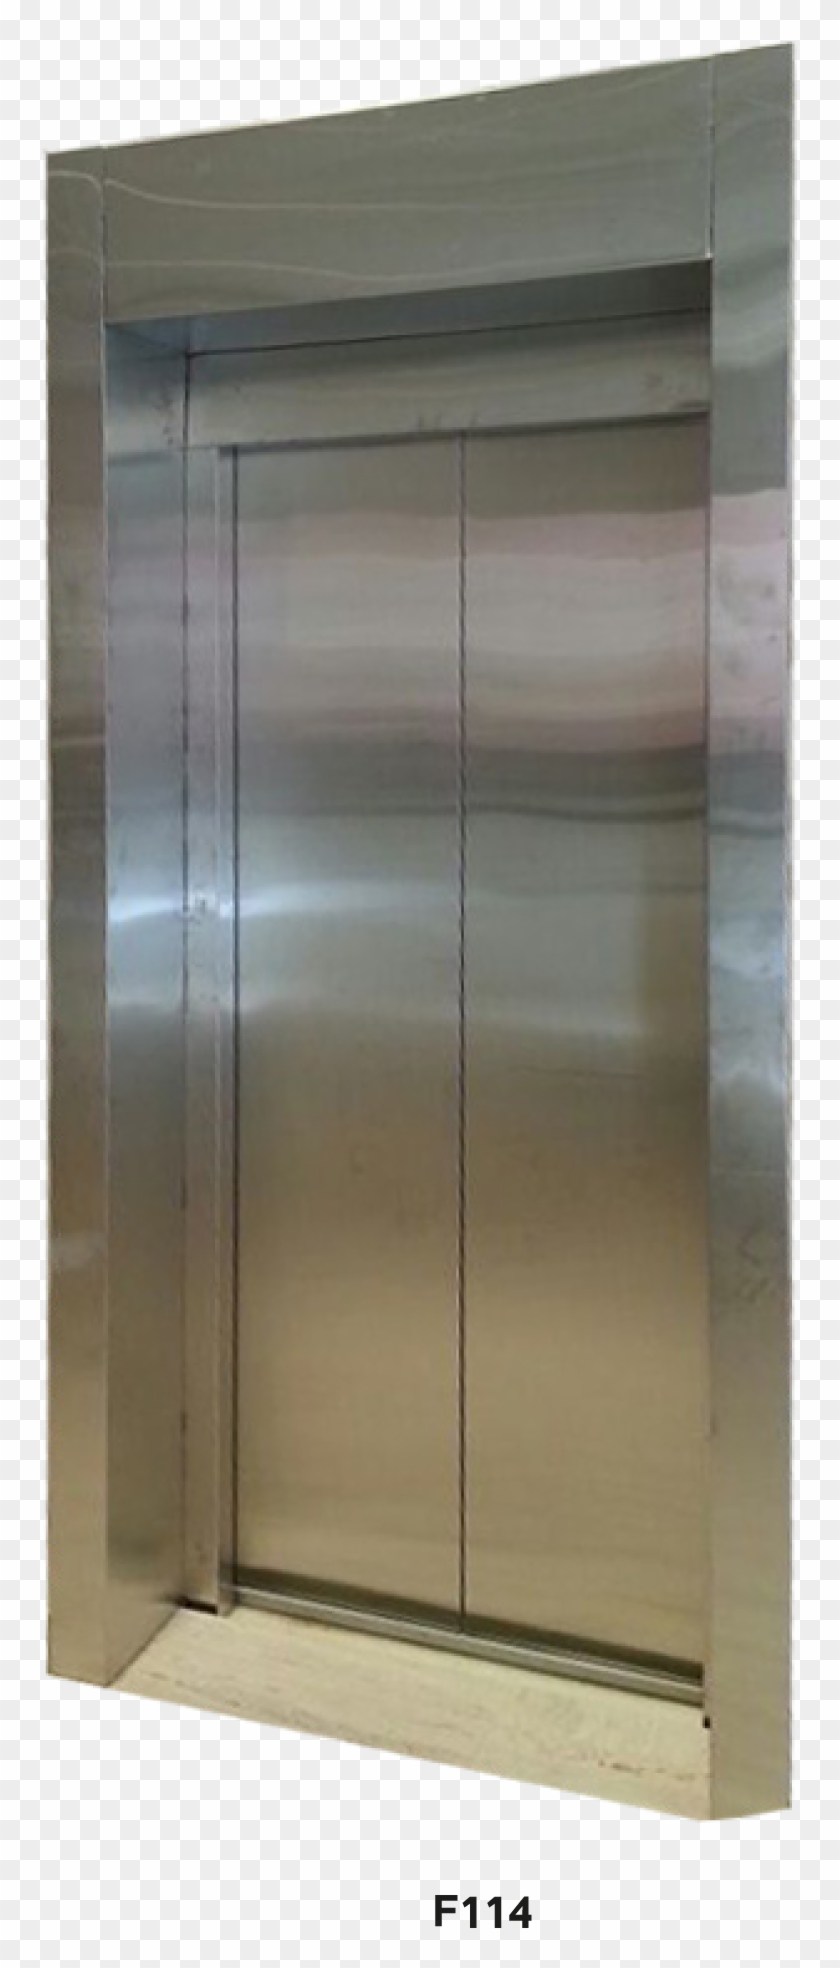 Elevator Doors - Window Screen Clipart #3957044